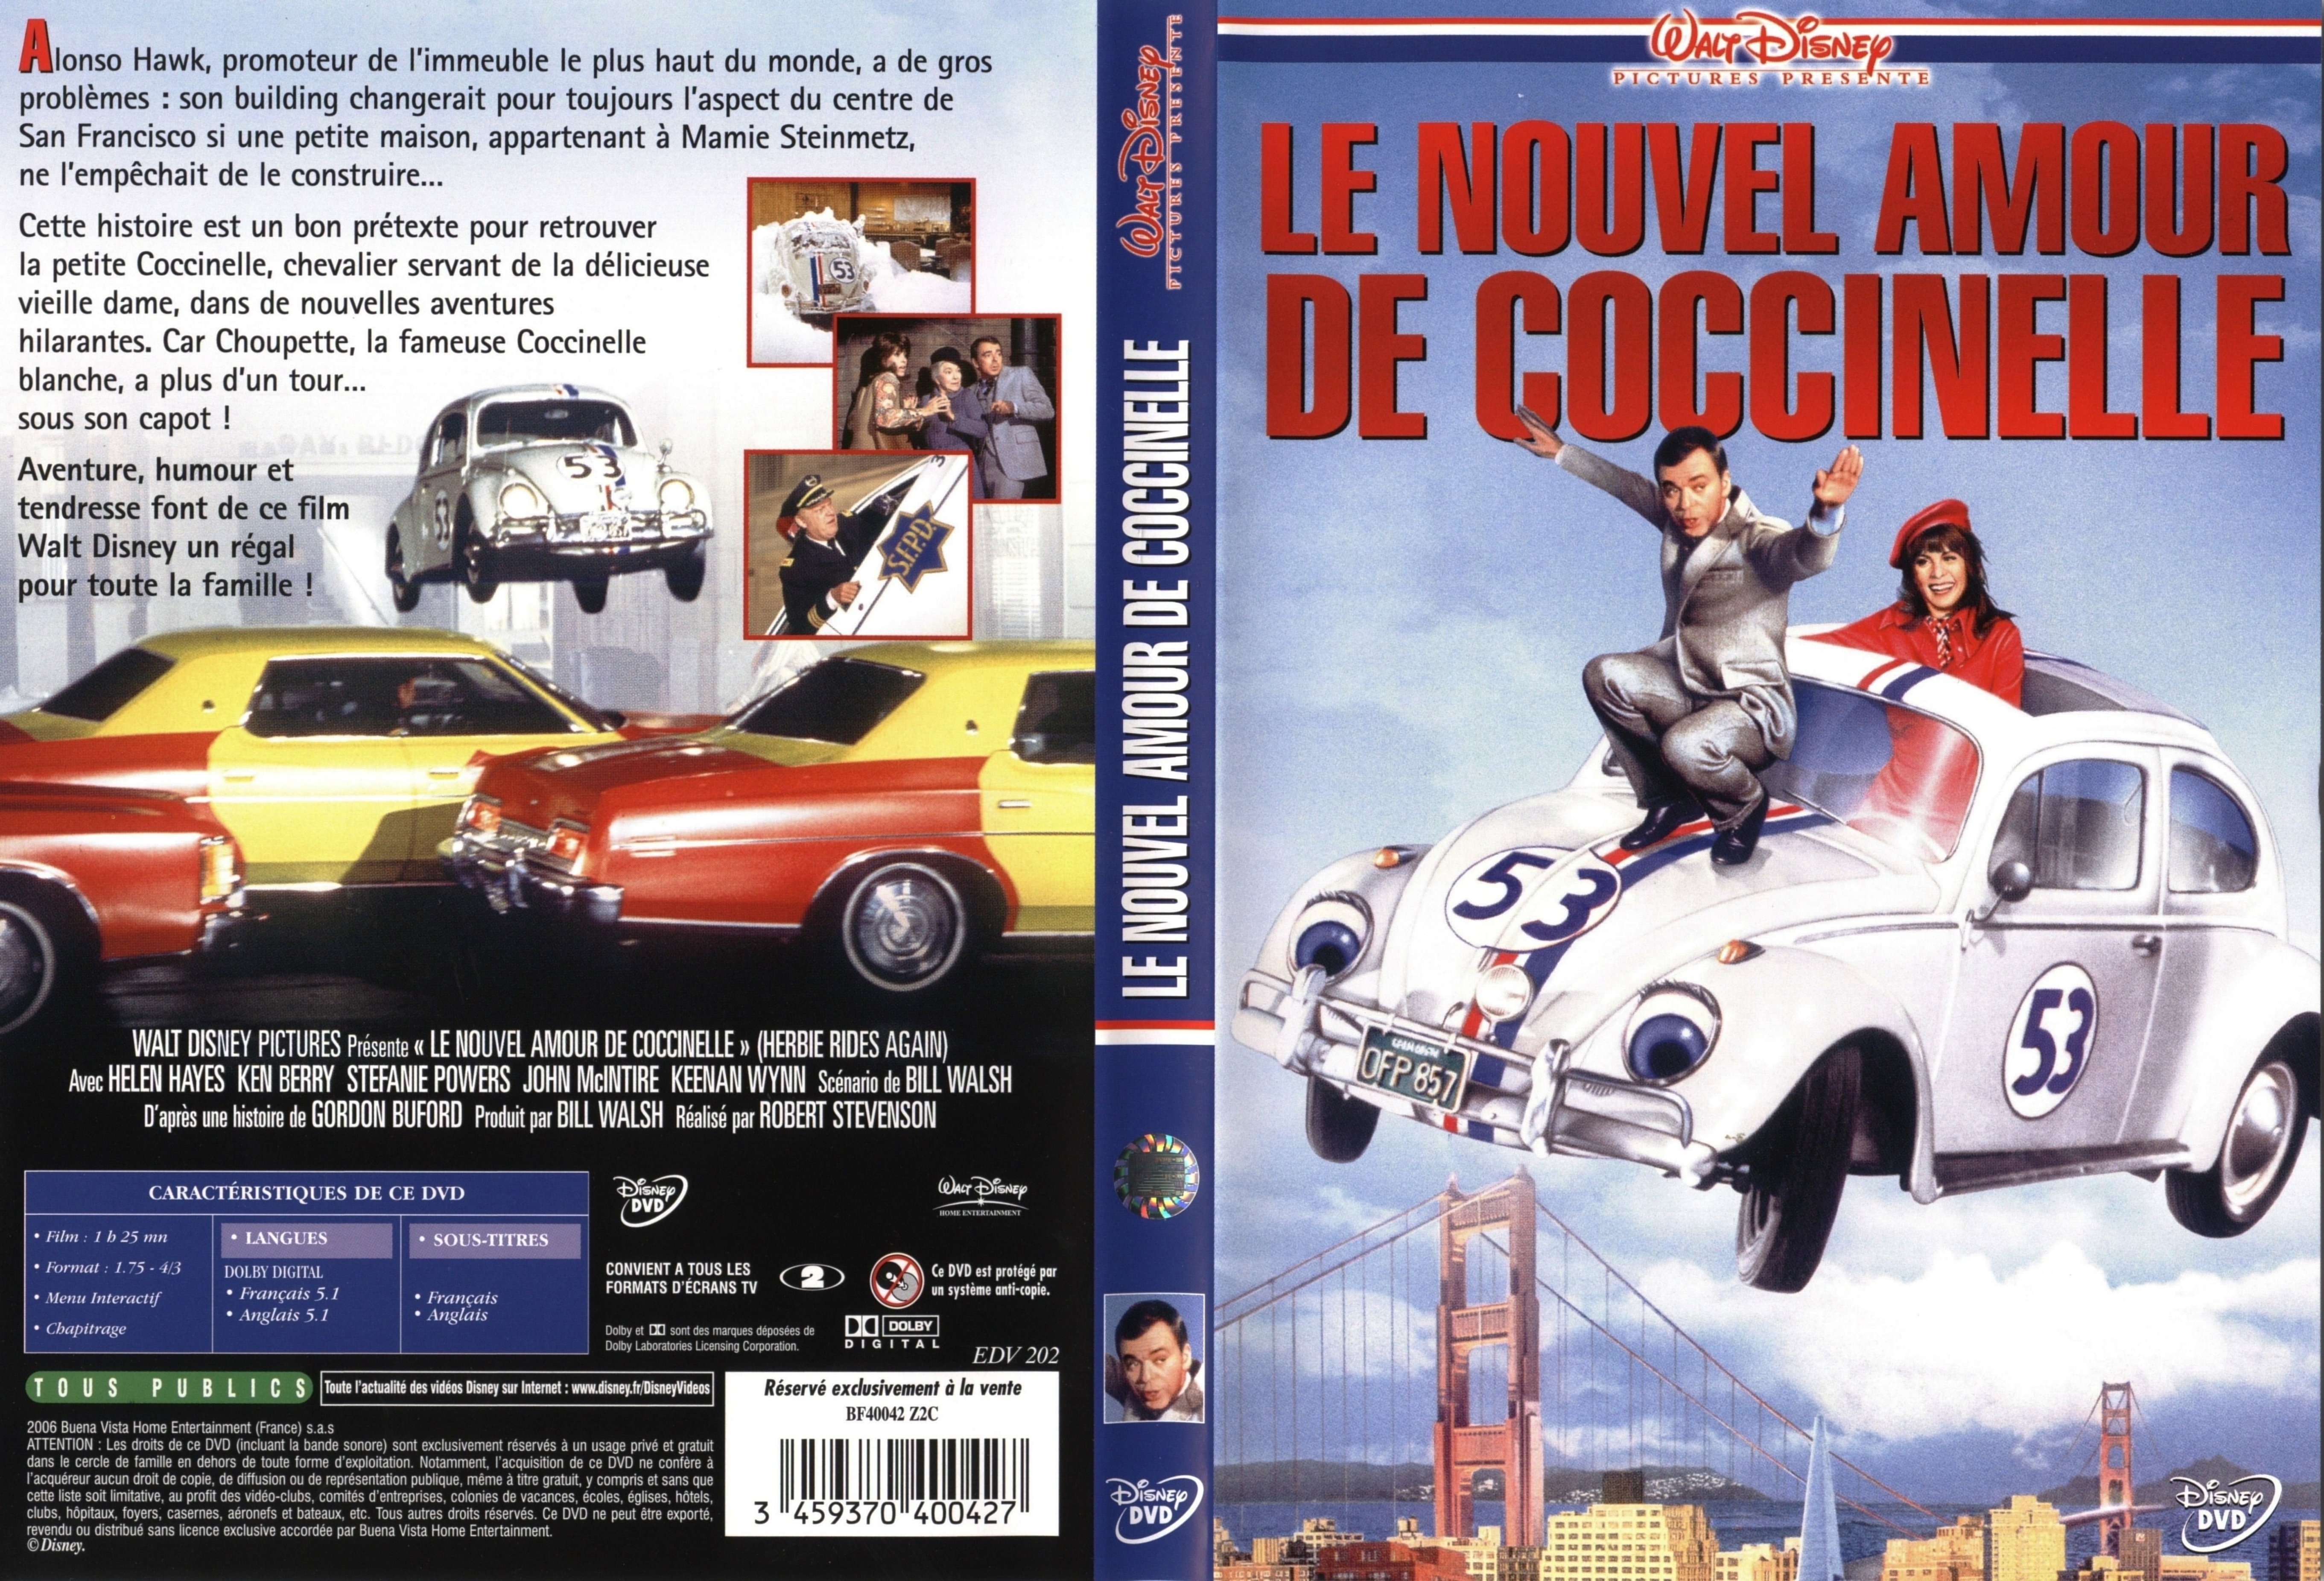 Jaquette DVD Le nouvel amour de coccinelle